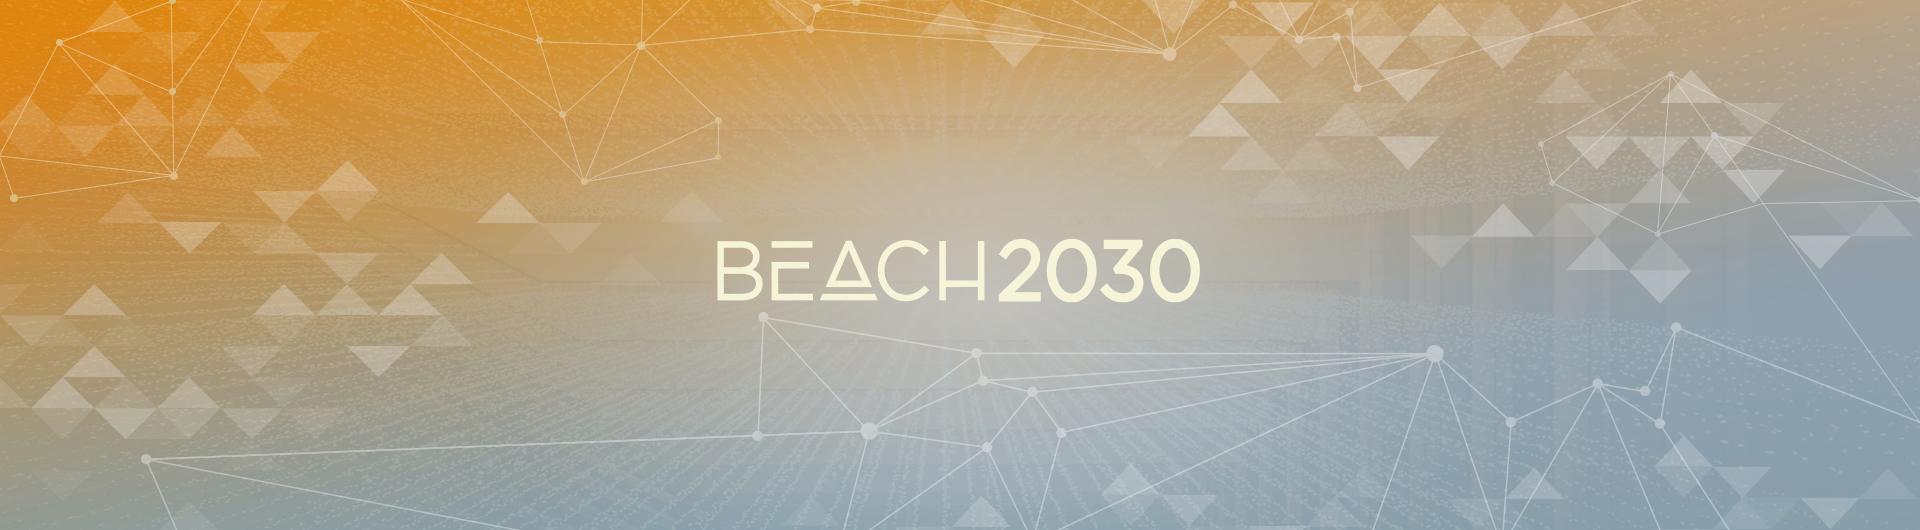 Beach 2030 Logo